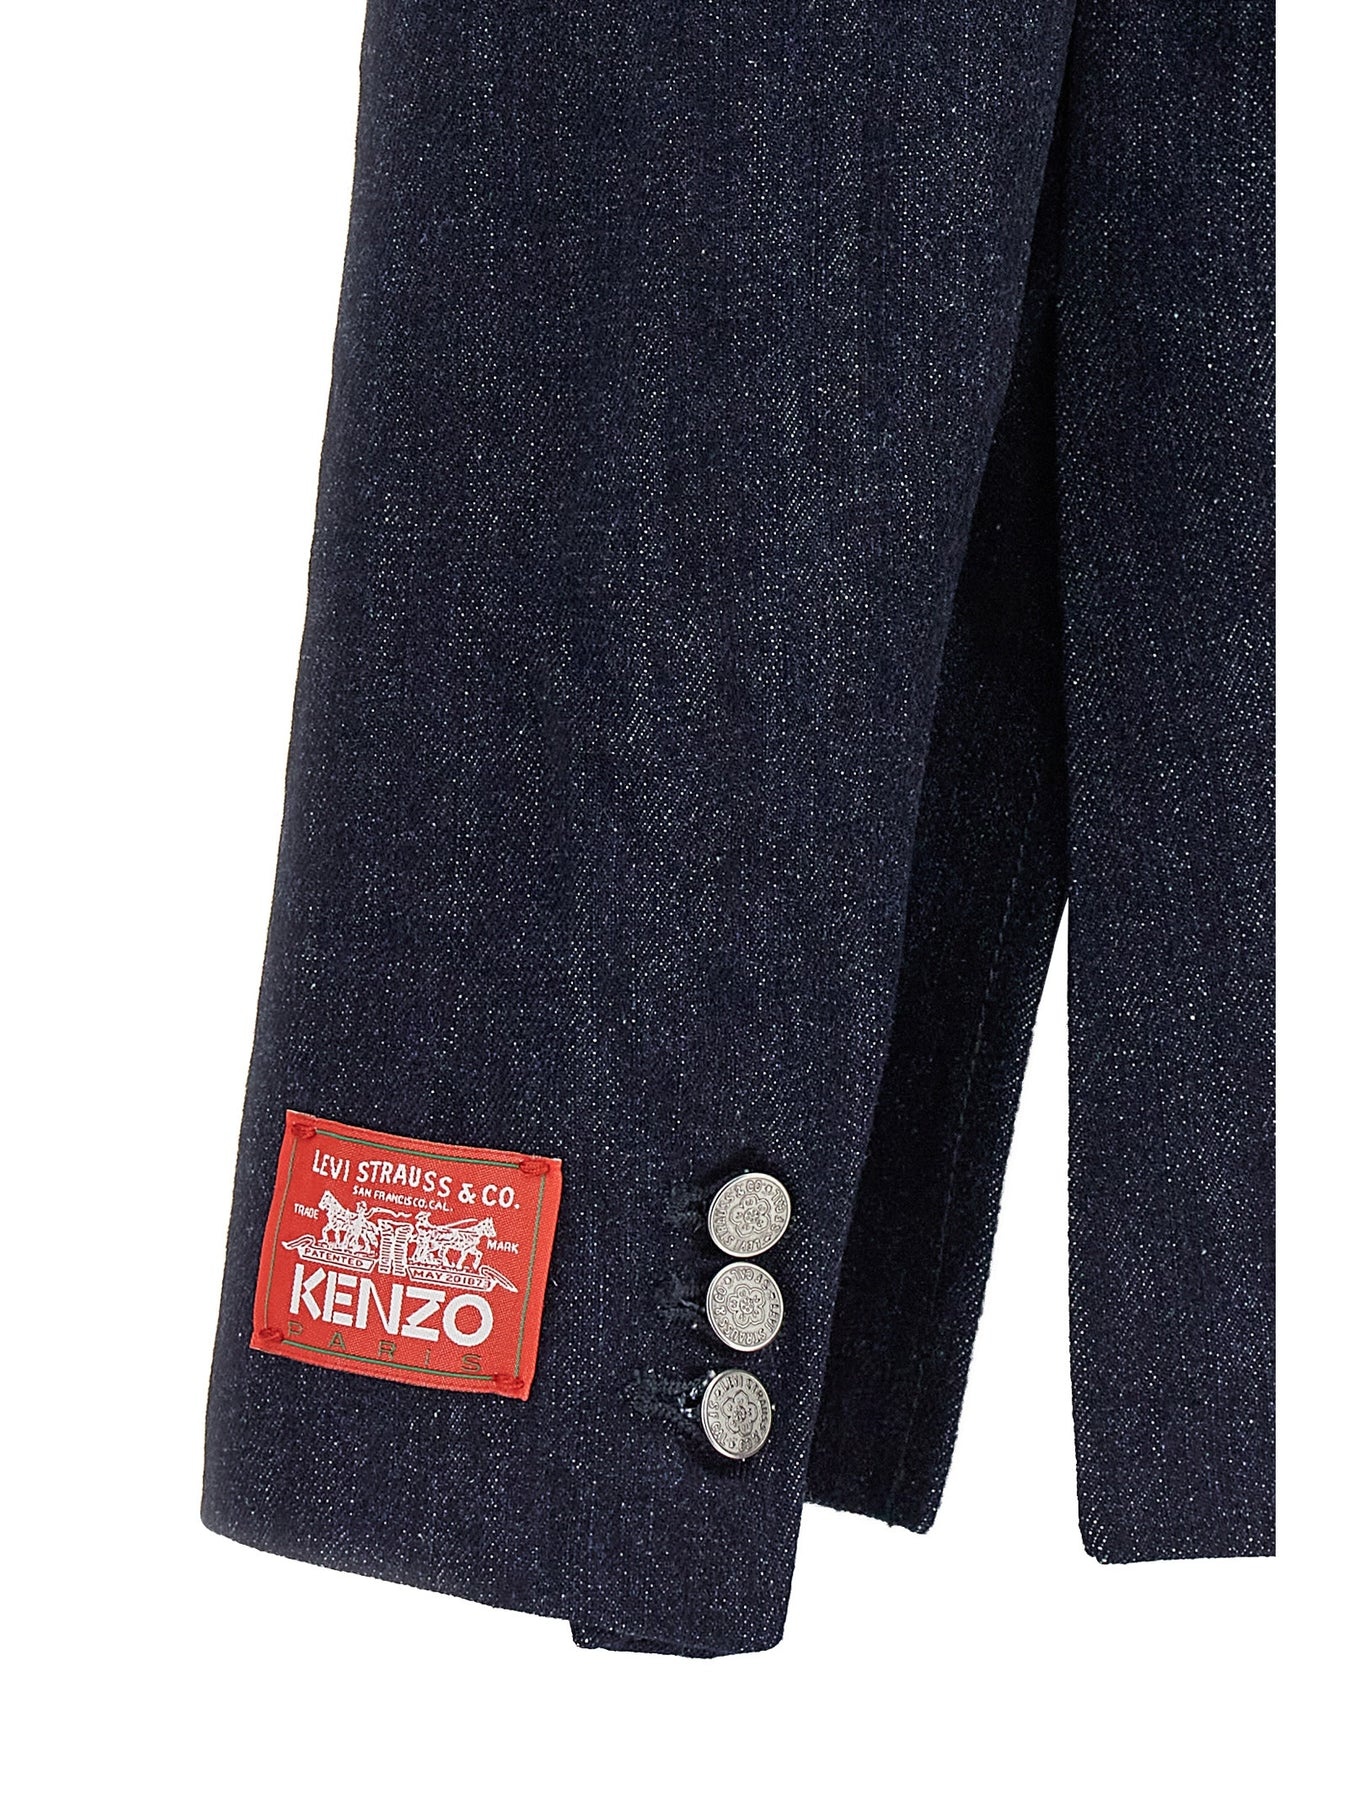 Kenzo X Levi Strauss & Co. Blazer Jackets Blue - 4